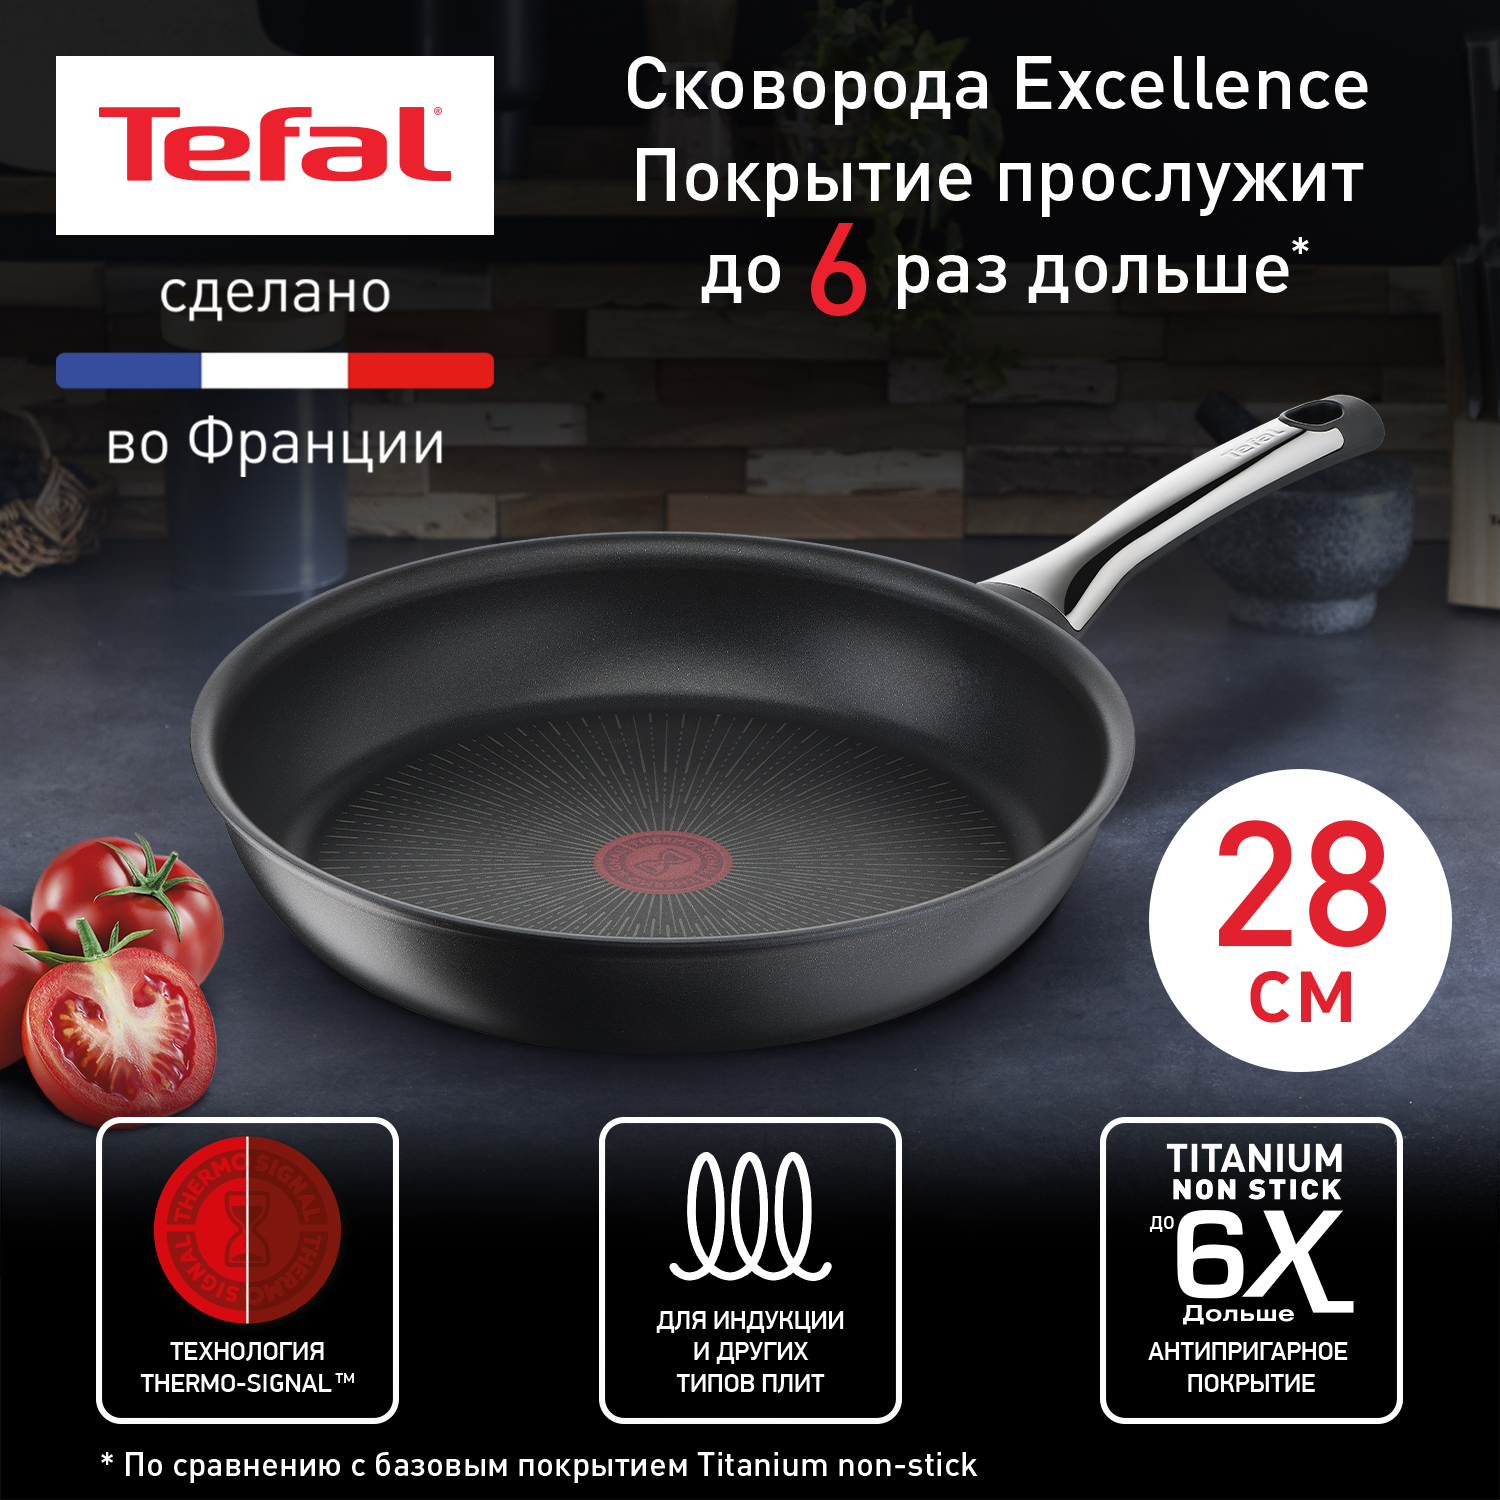 Сковорода универсальная Tefal Excellence 28 см черный G2690672 - купить в Глобус Гипермаркет - СберМаркет, цена на Мегамаркет